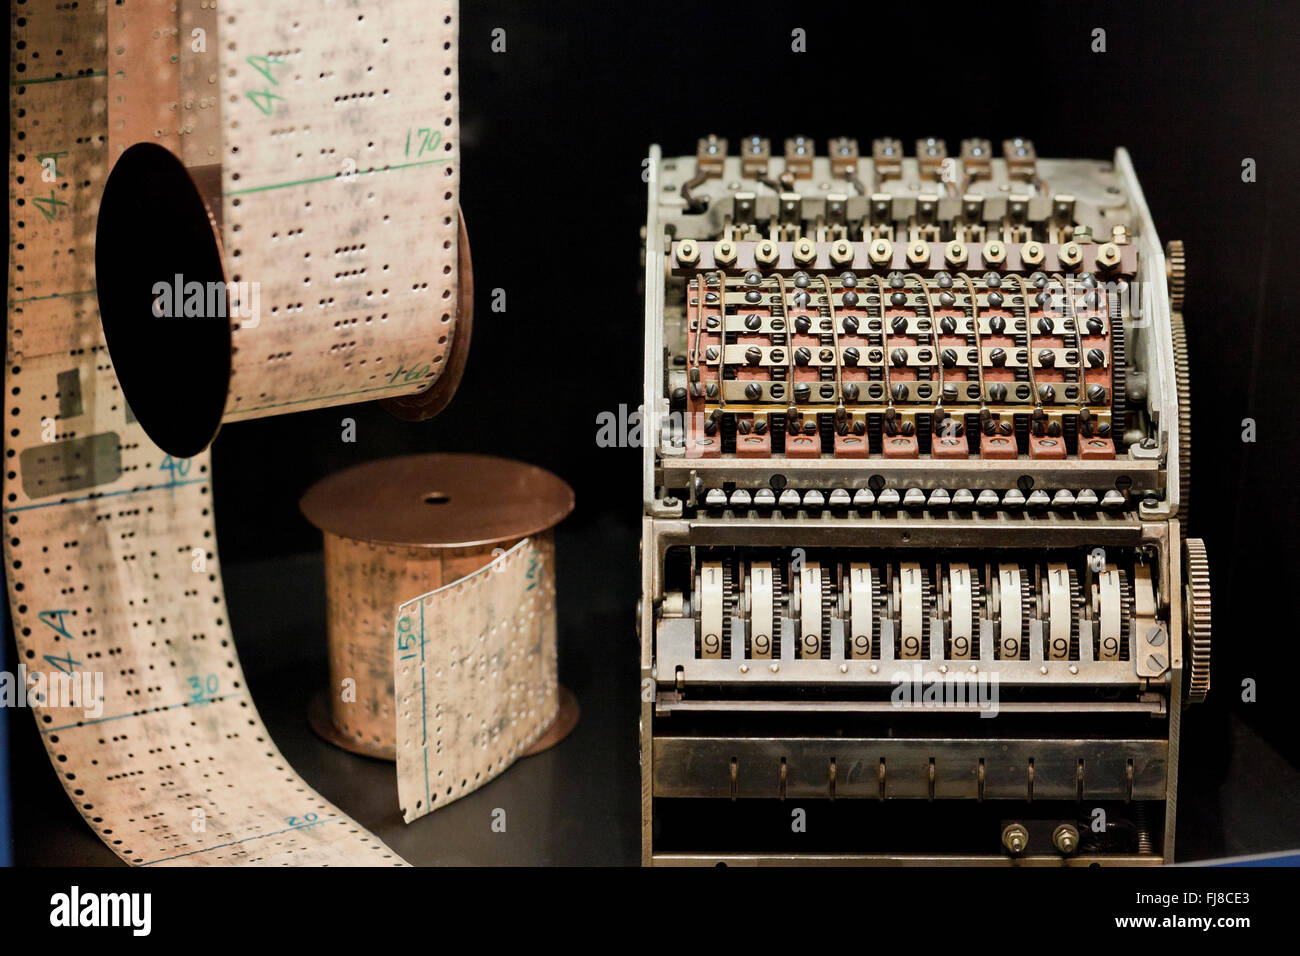 IBM automatische Sequenz gesteuerten Rechner (Mark I), ca. 1944 - US Patent und Trademark Office - USA Stockfoto